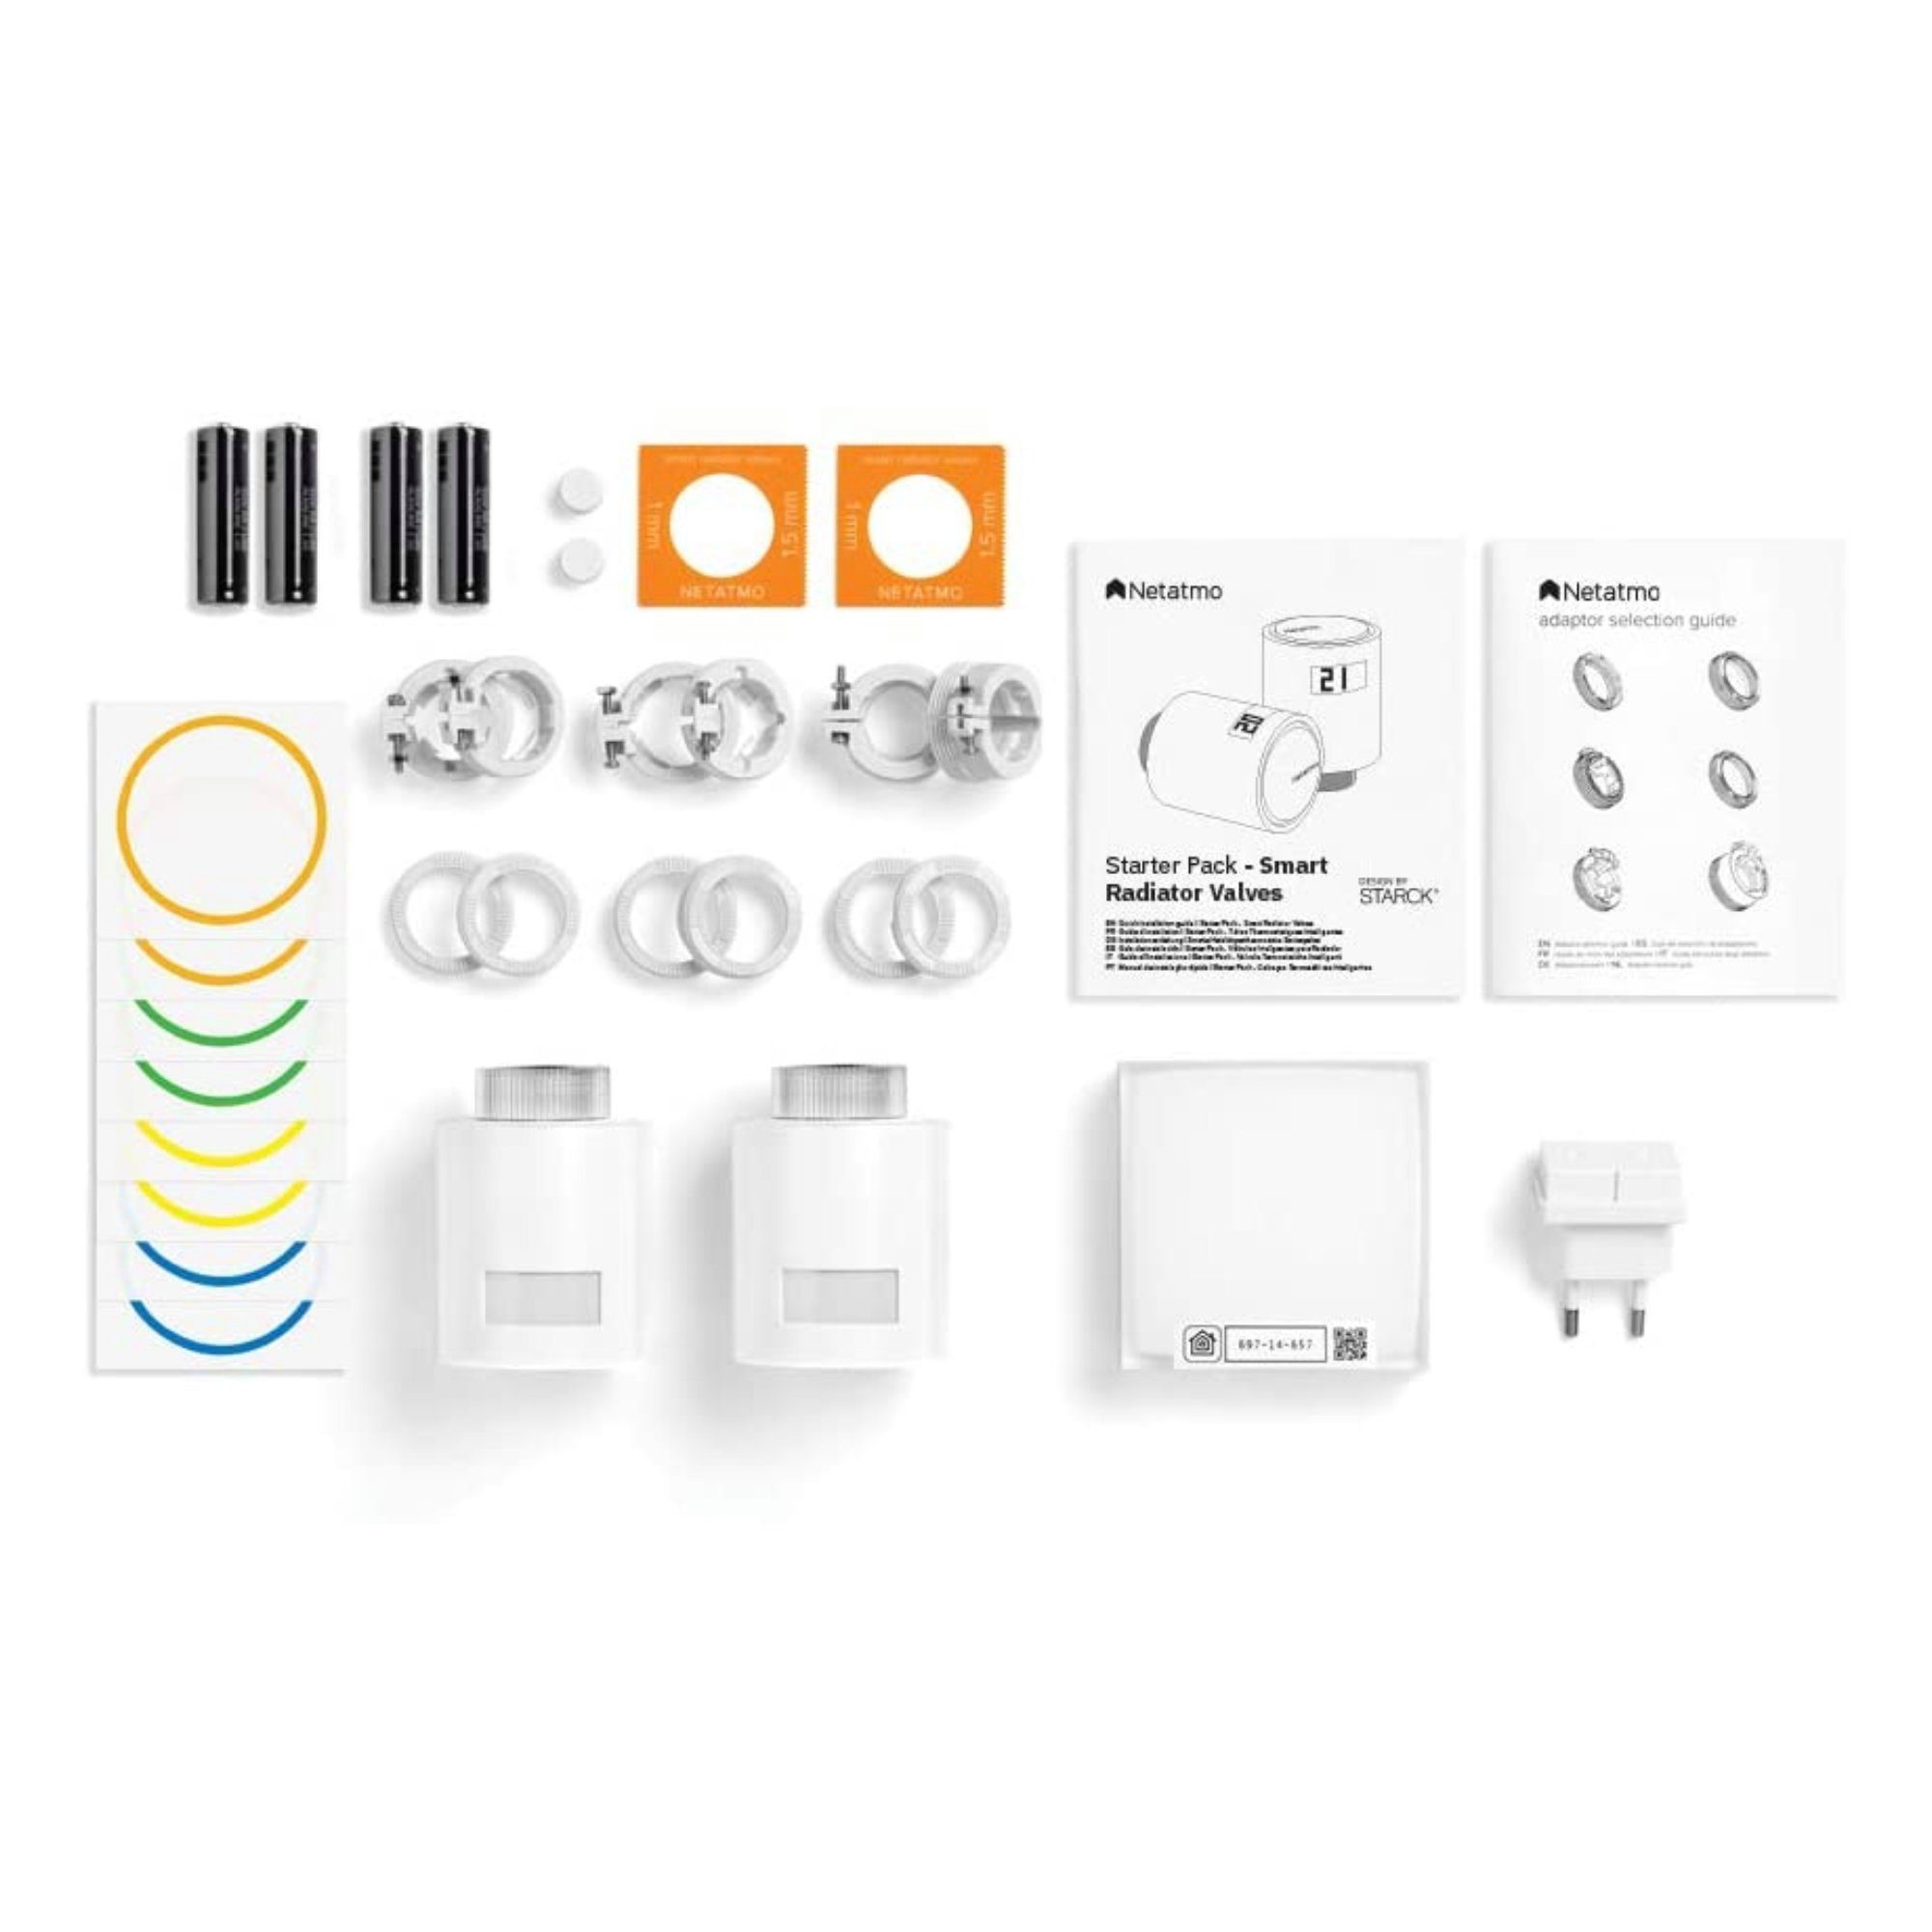 Heizkörperthermostat Starter-Pack - 2x Heizkörperthermostate Netatmo Thermostat inkl. Relay Smarte